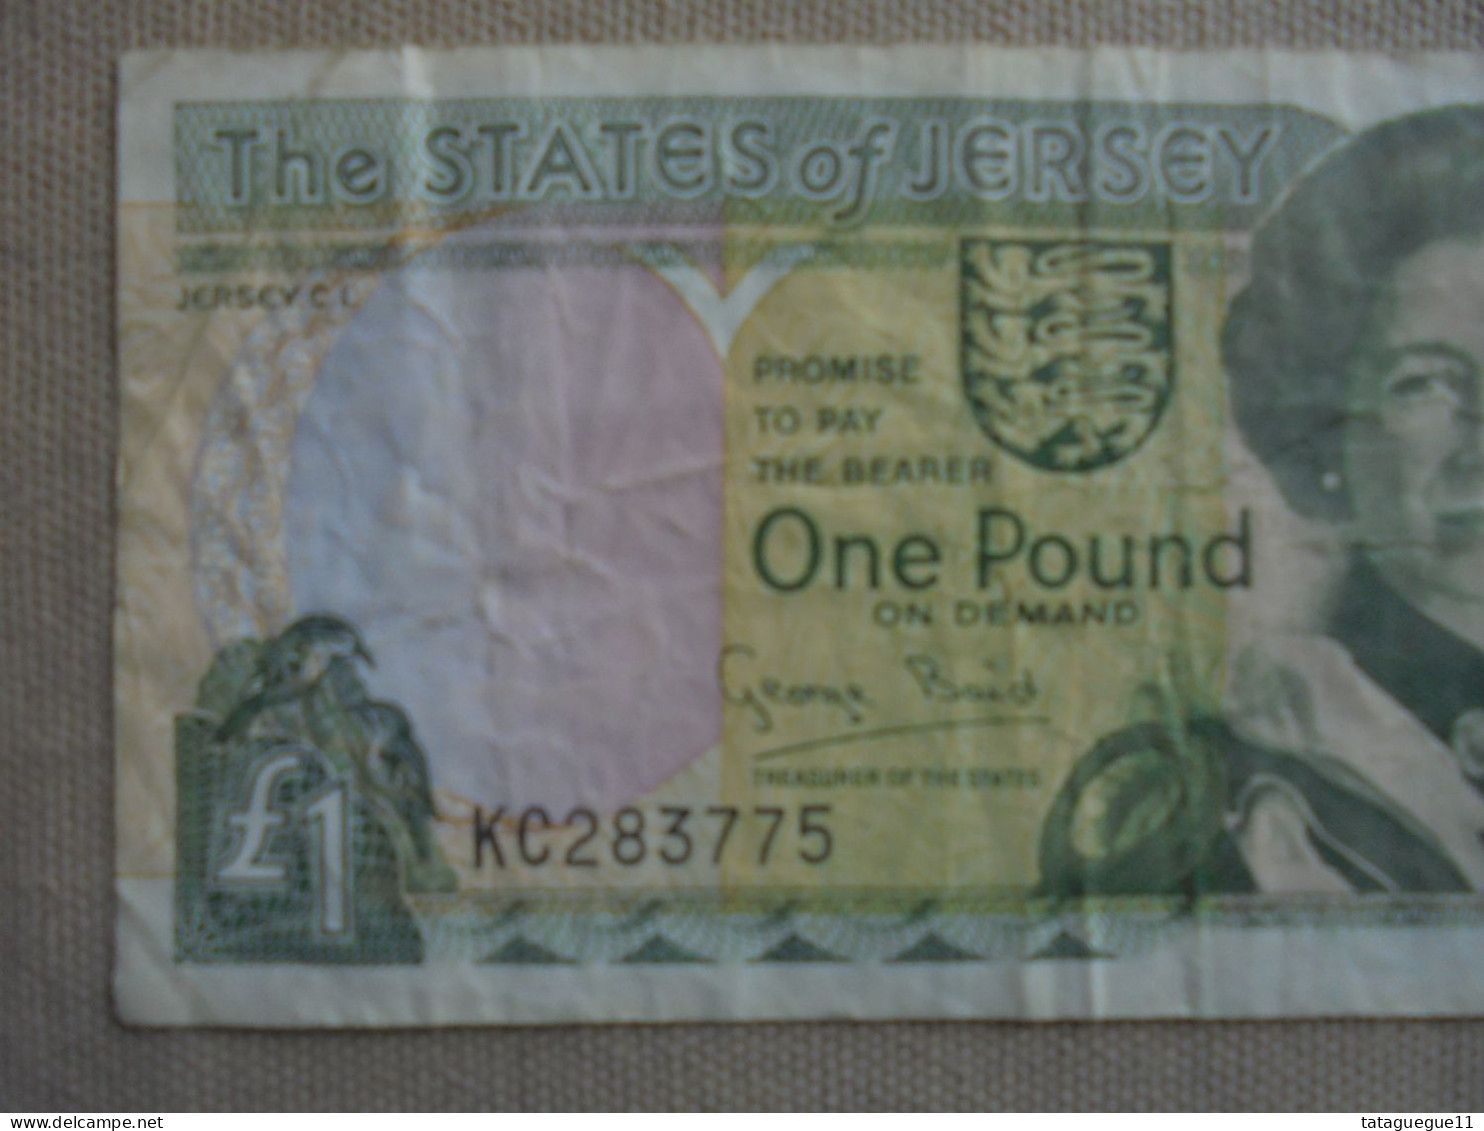 Ancien - Billet De Banque - One Pound The States Of Jersey - George Baird - 1 Pound